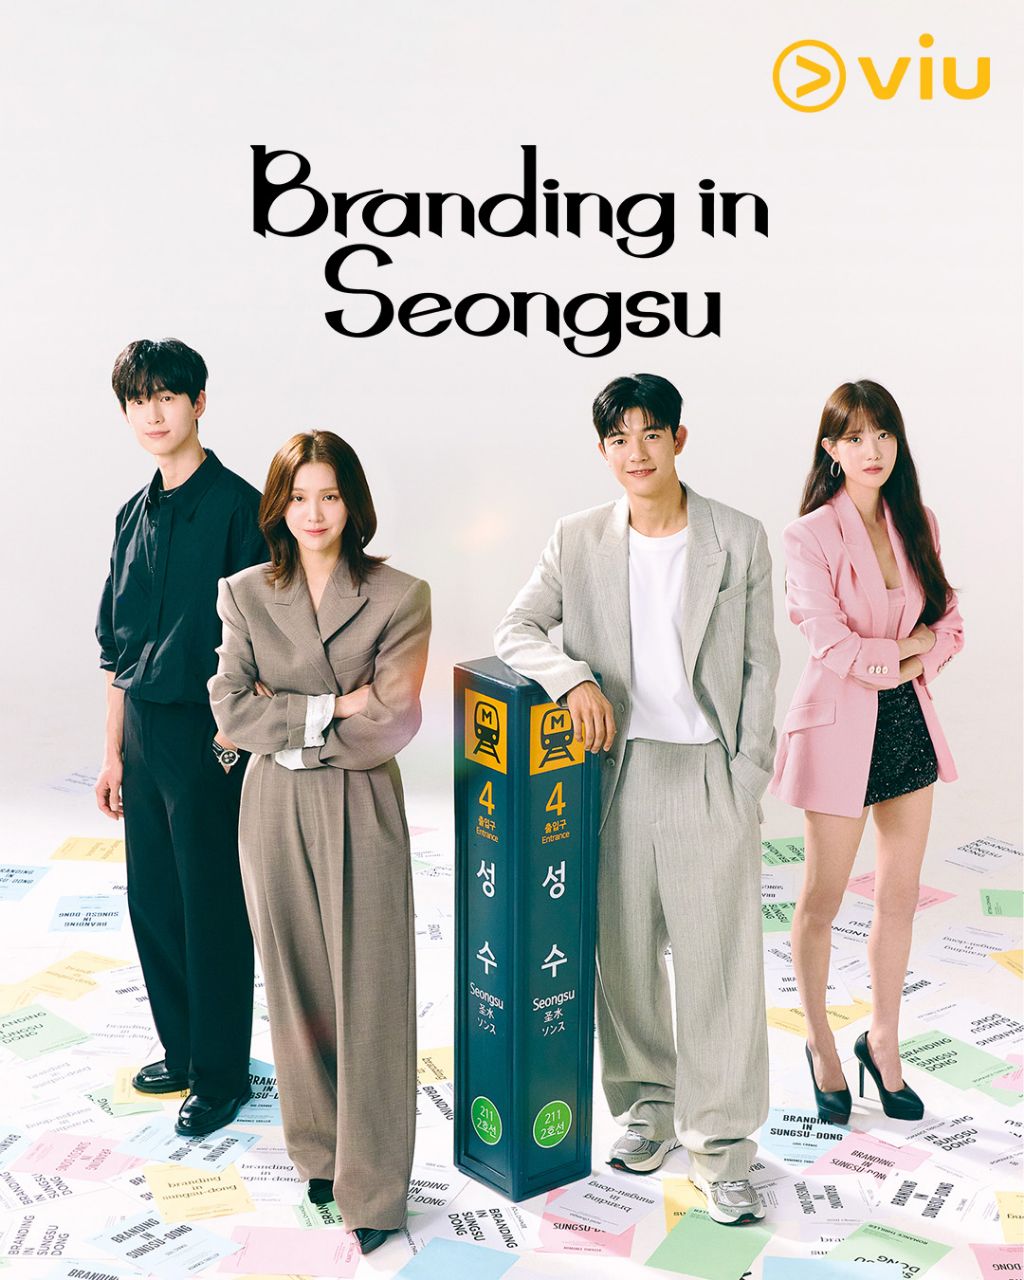 مسلسل العلامة التجارية في سيونغسو Branding in Seongsu الحلقة 15